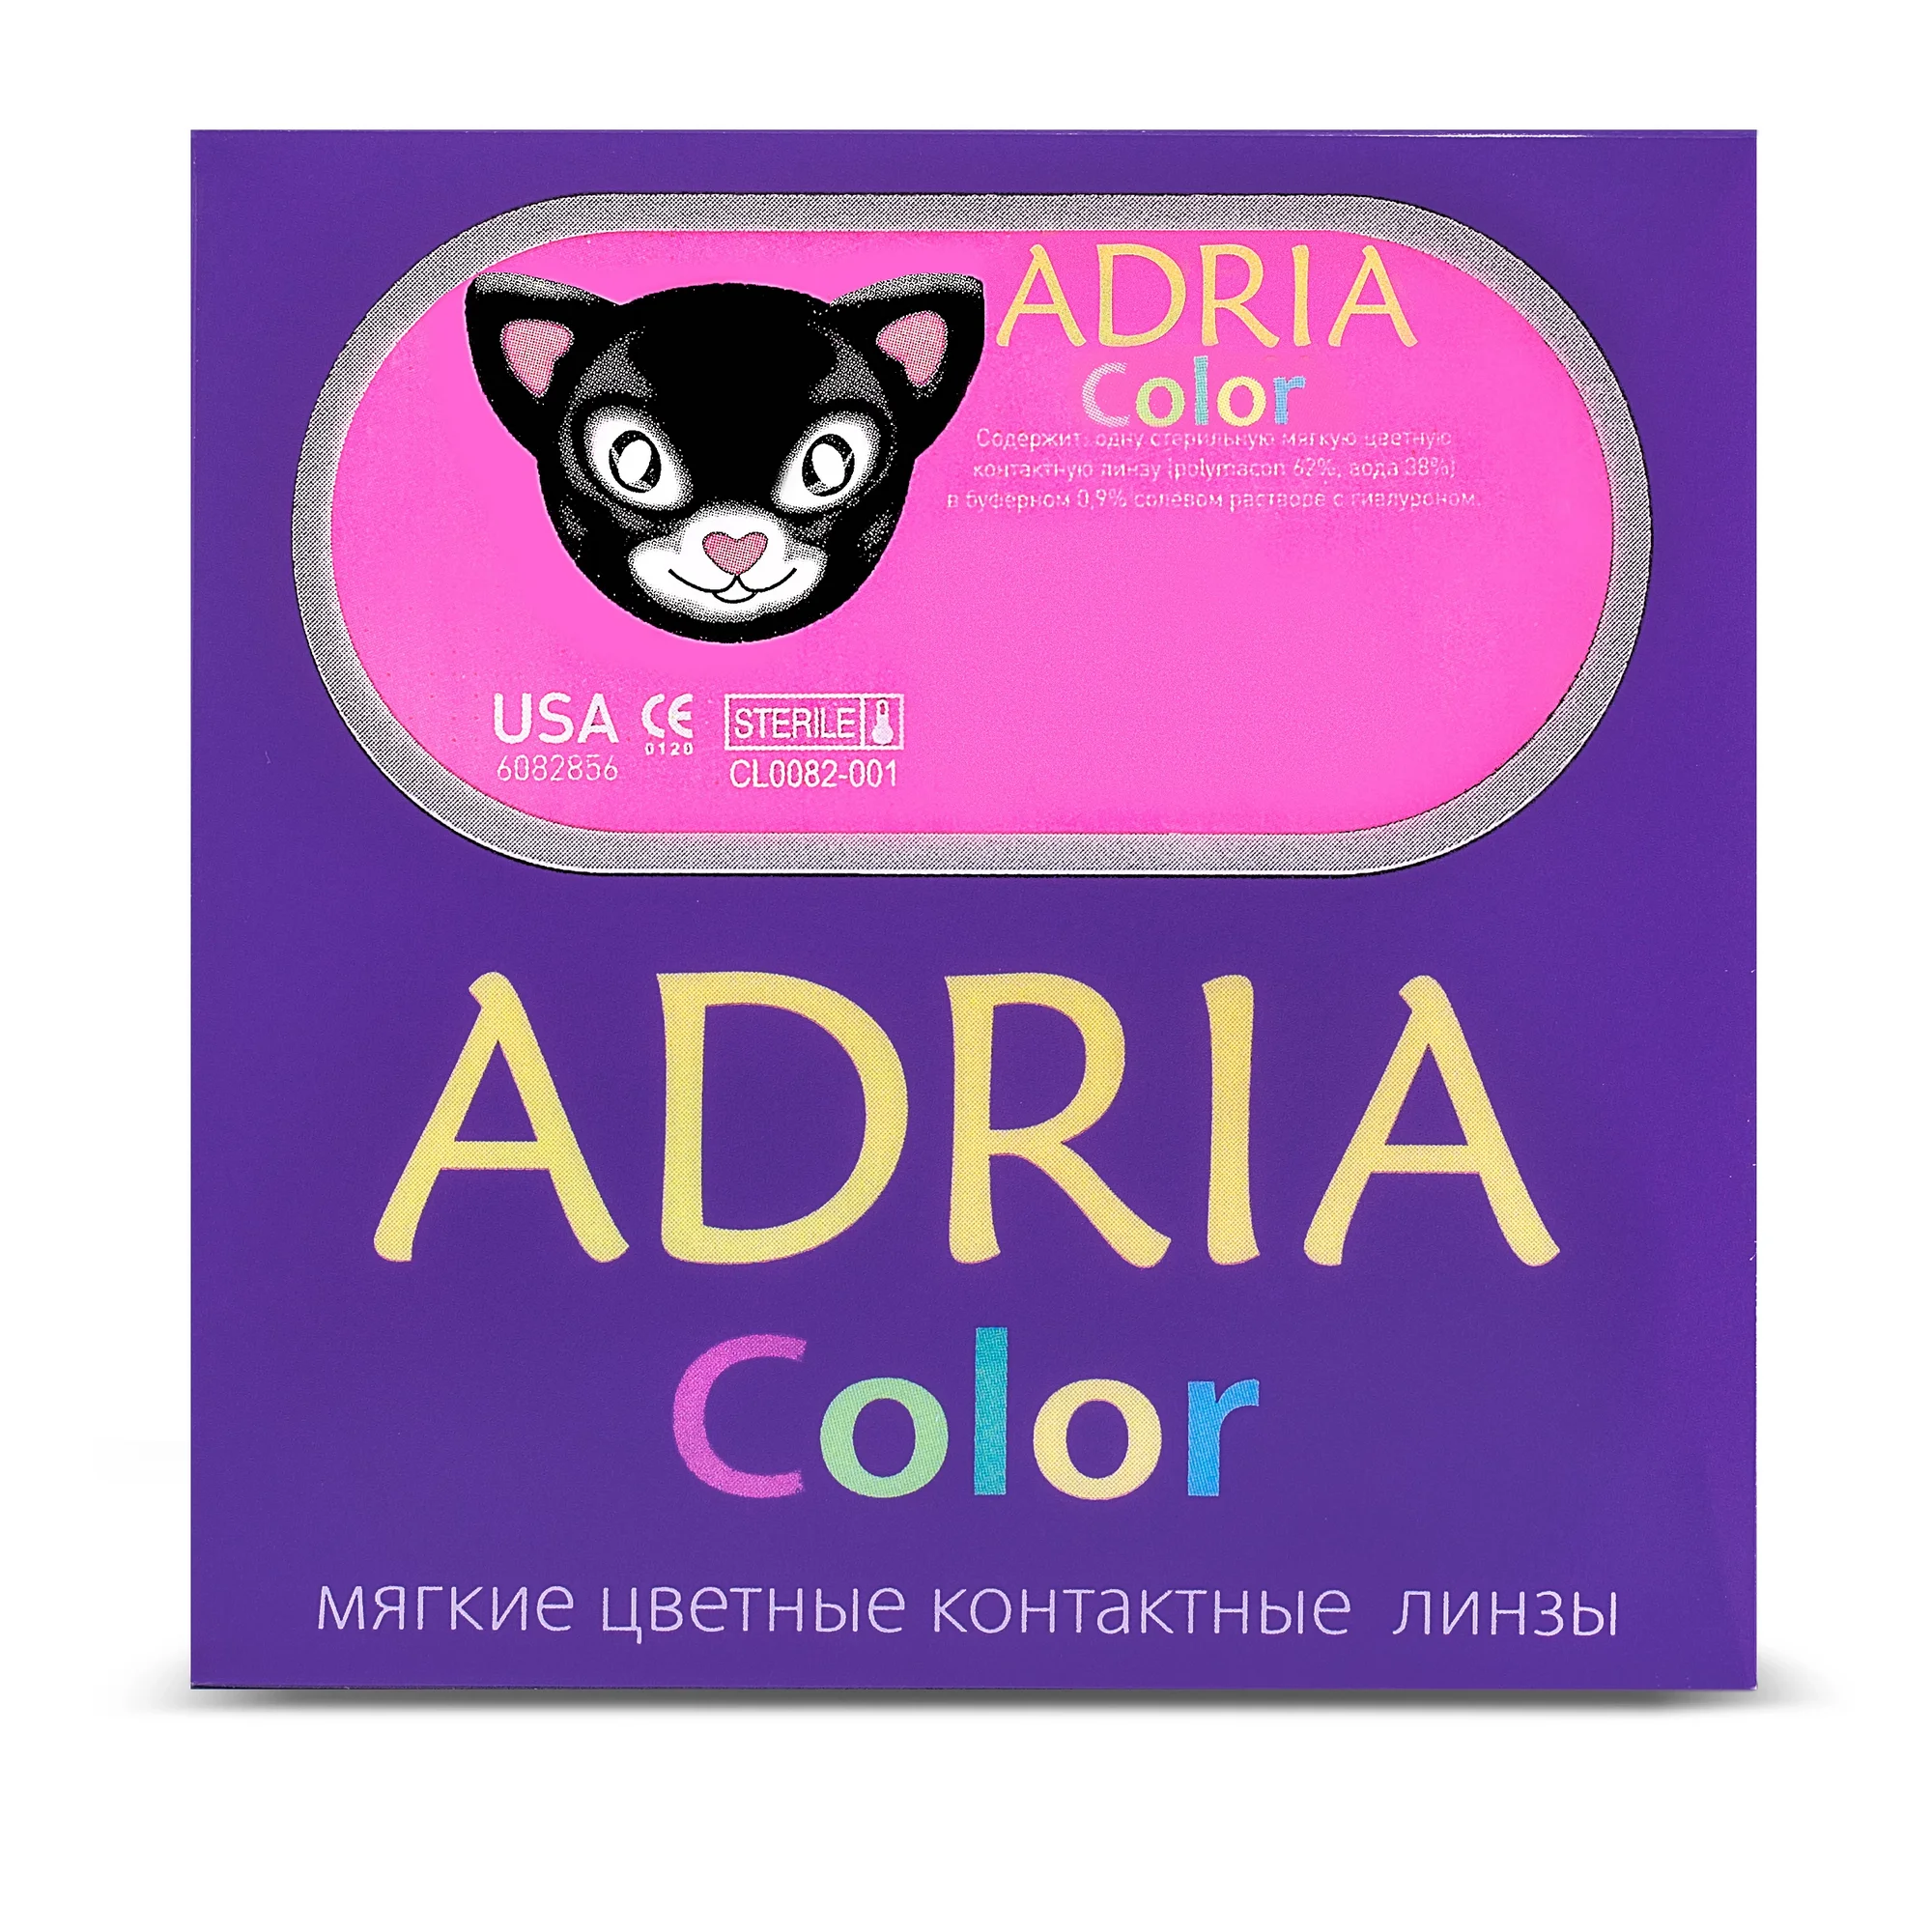 COLOR BOX ADRIA Color 2 Tone Hazel (орех)